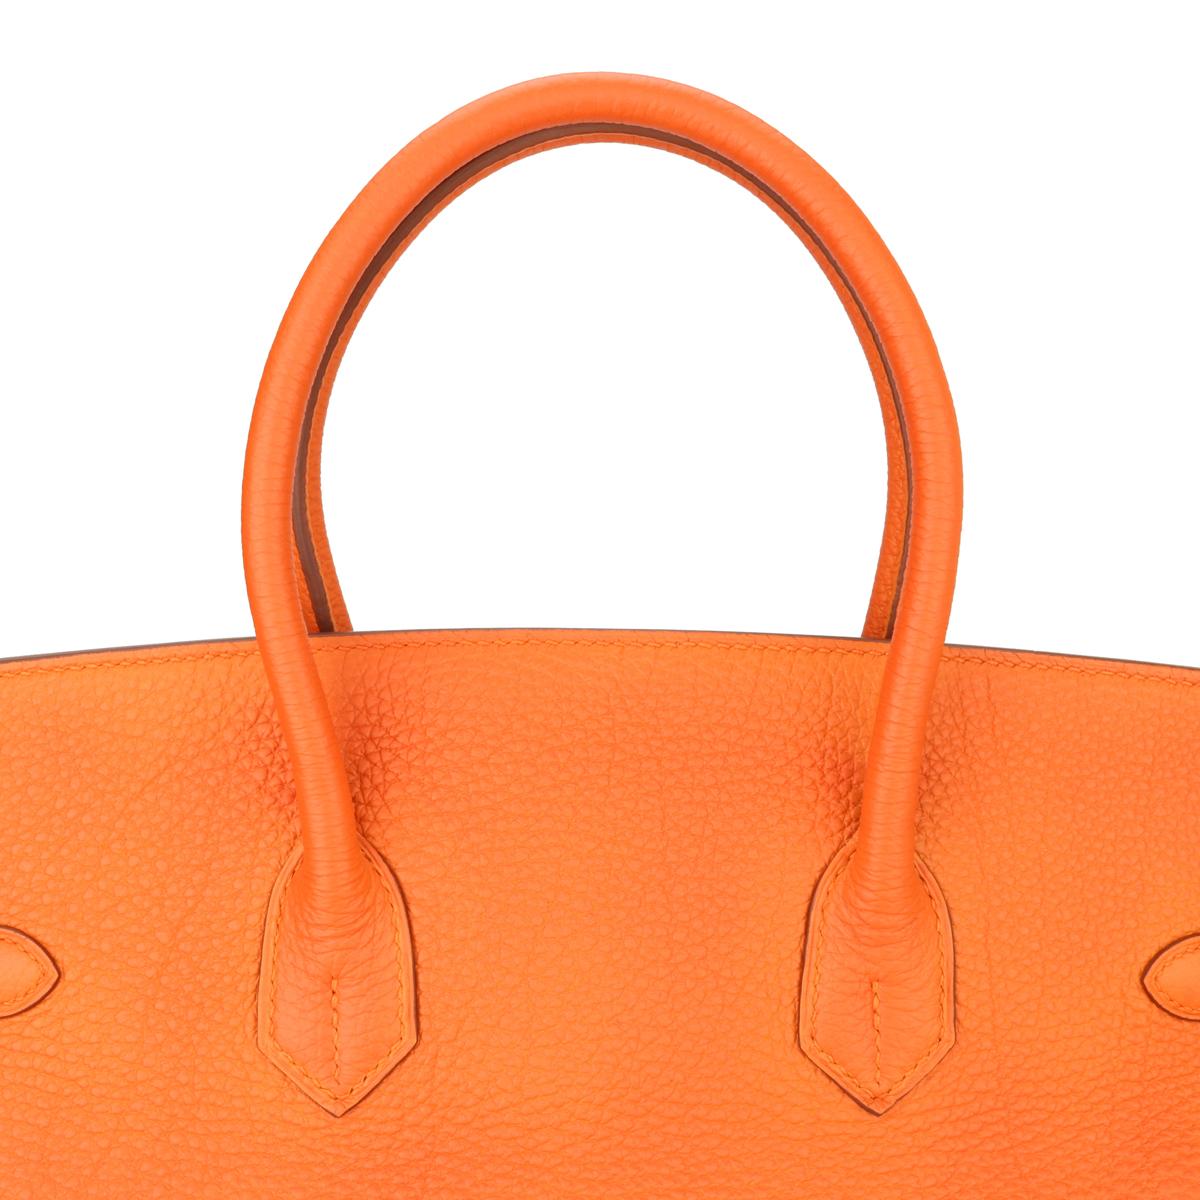 Hermès Birkin Bag 35cm Orange Togo Leather with Palladium Hardware Stamp M 2009 6